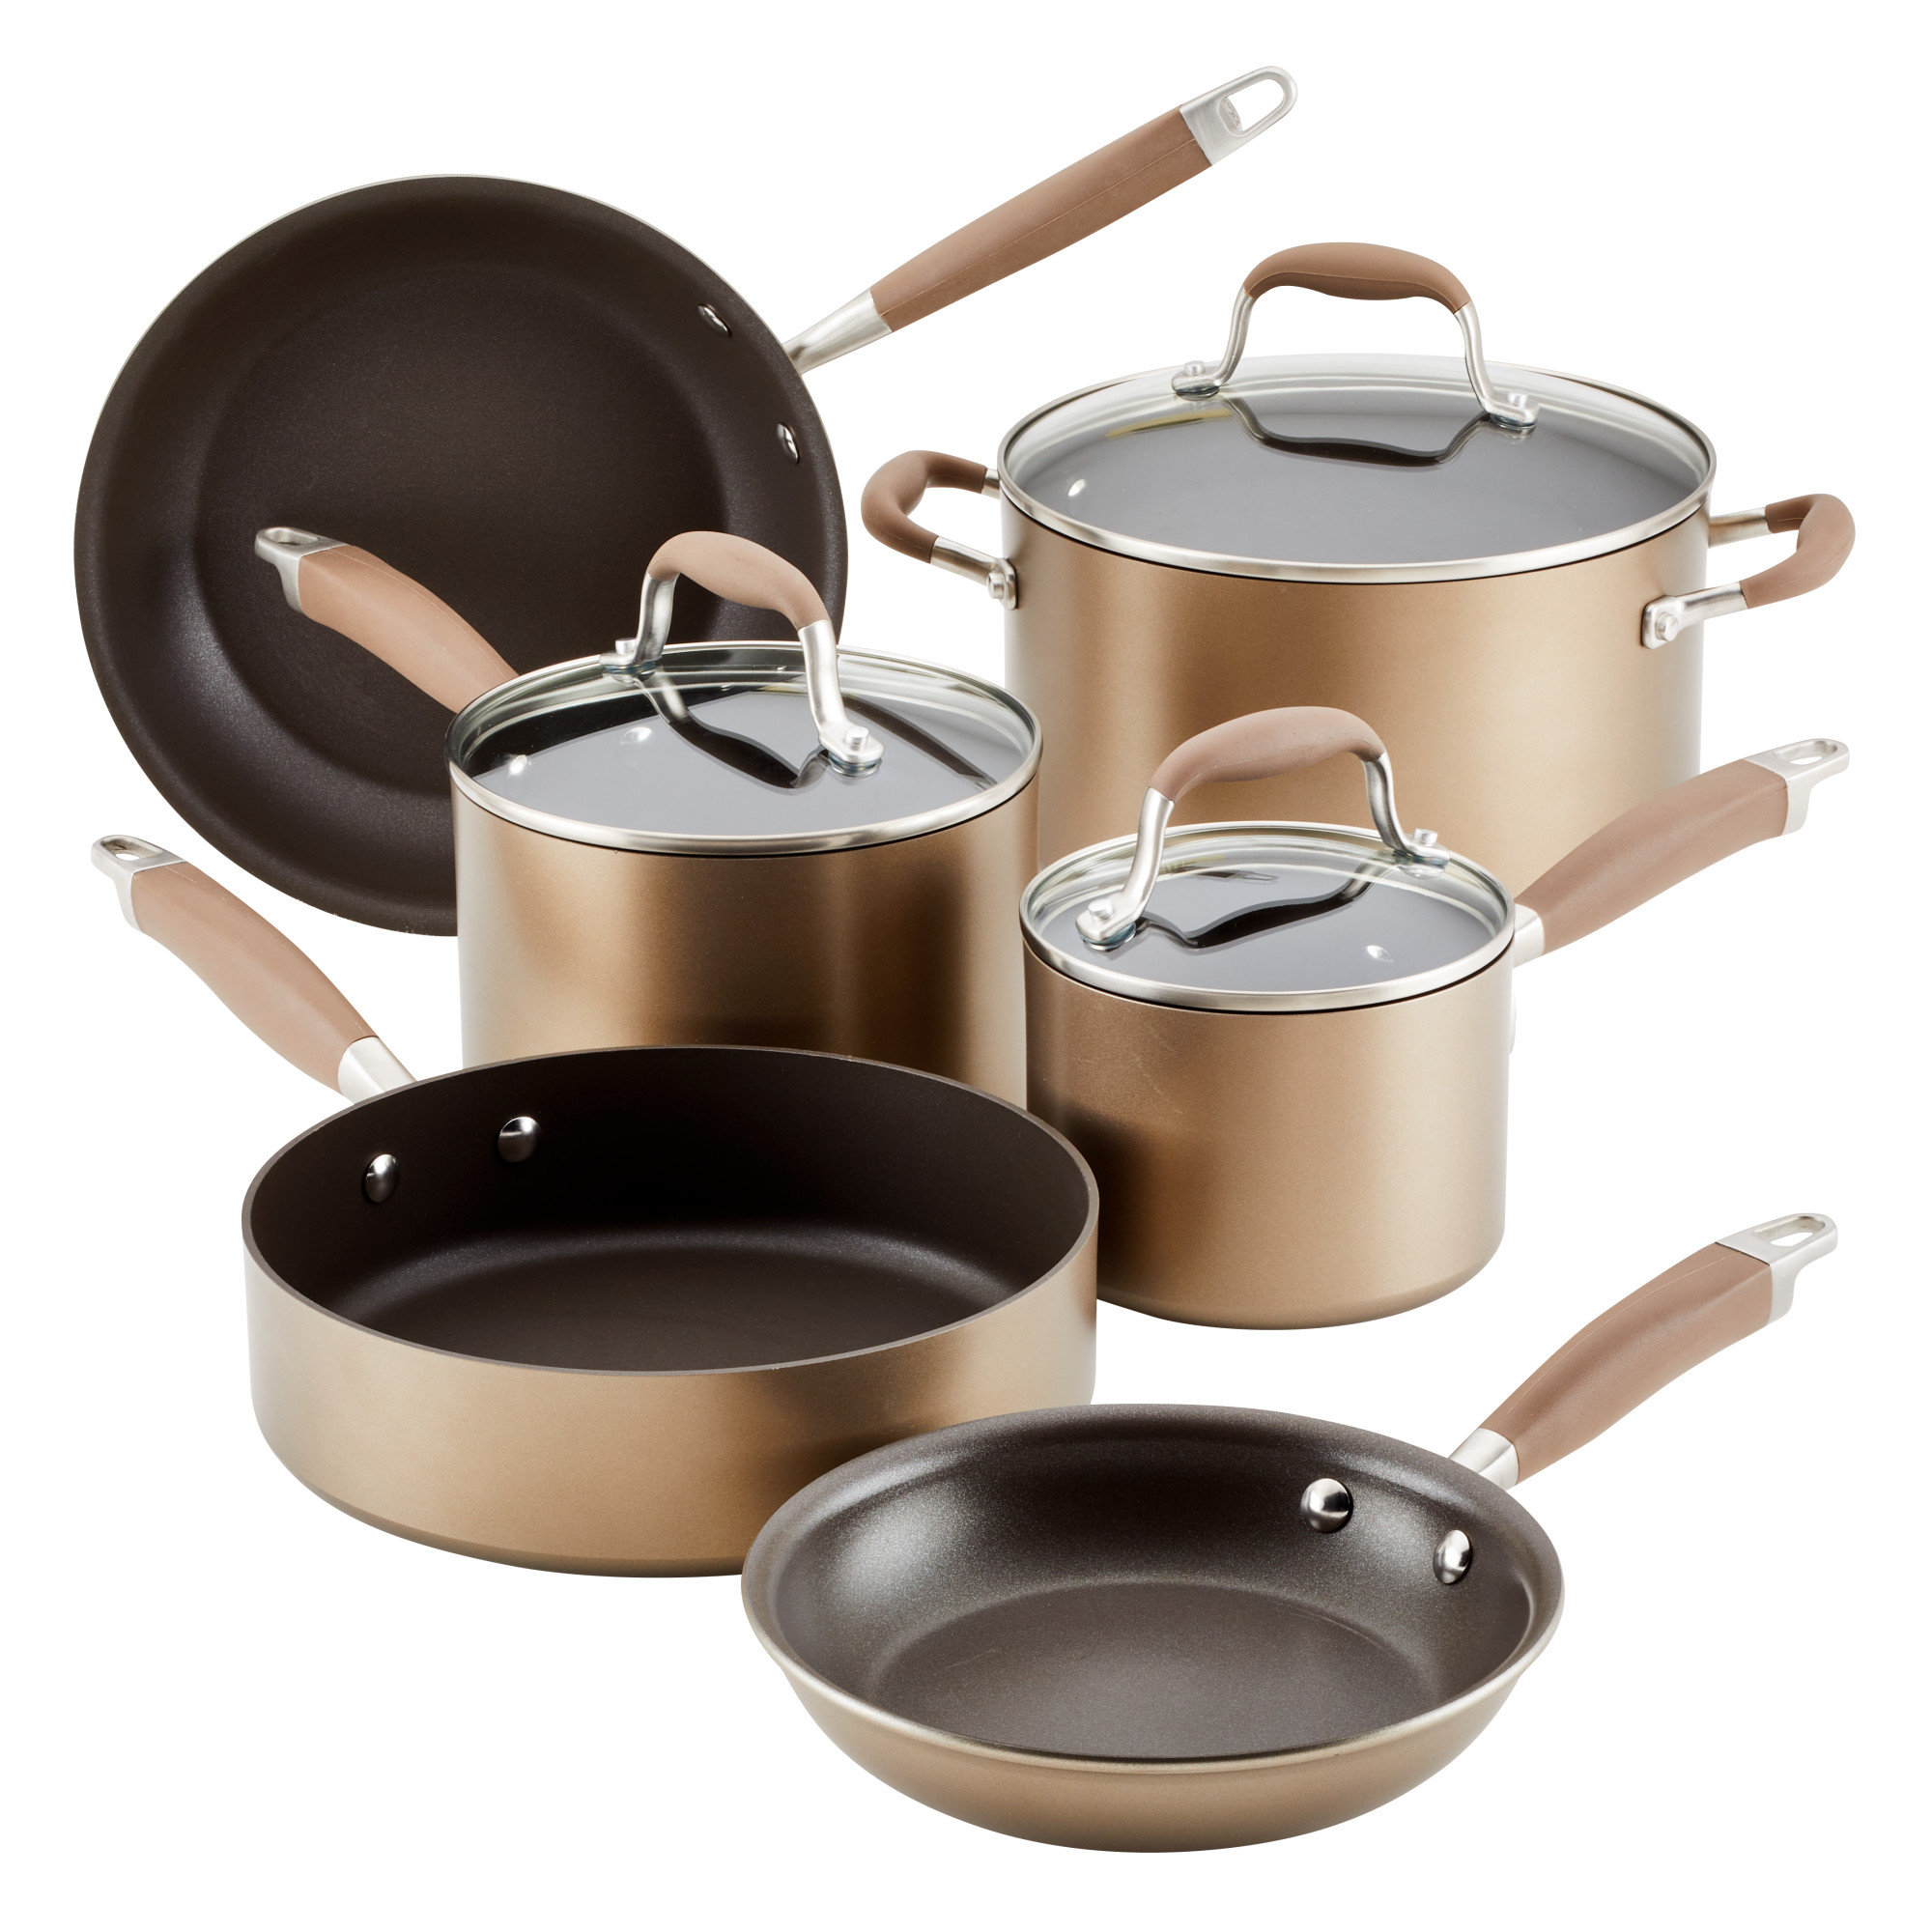 https://assets.wfcdn.com/im/29042077/compr-r85/2336/233684739/anolon-advanced-bronze-hard-anodized-nonstick-cookware-pots-and-pans-set-9-piece.jpg